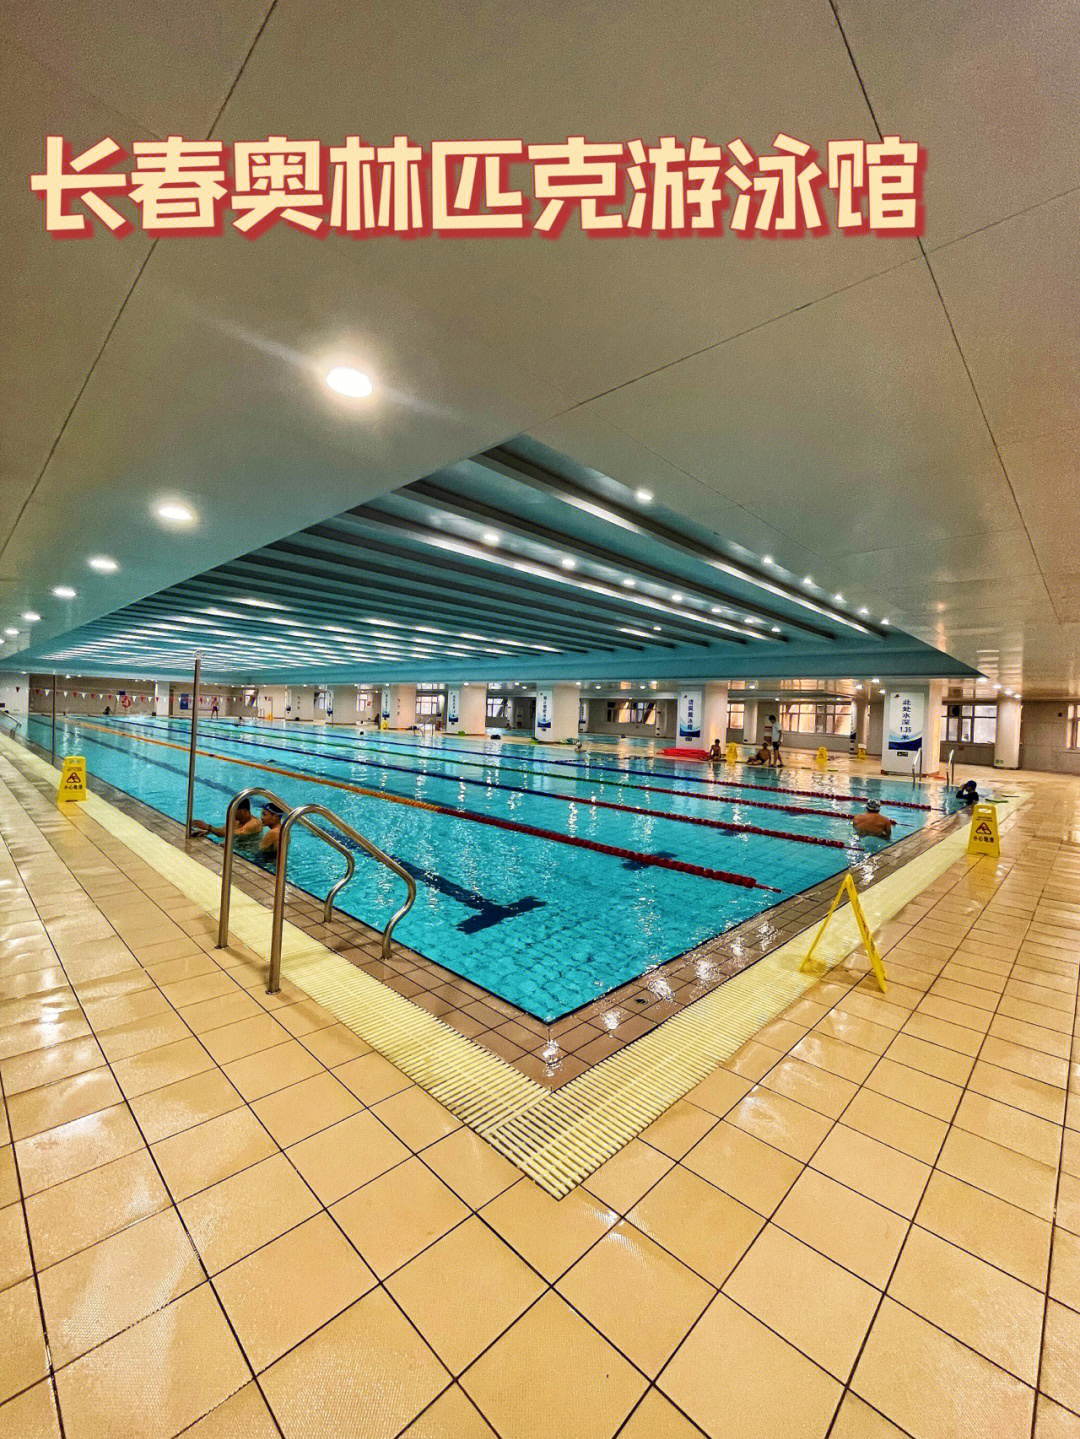 长春市游泳馆图片